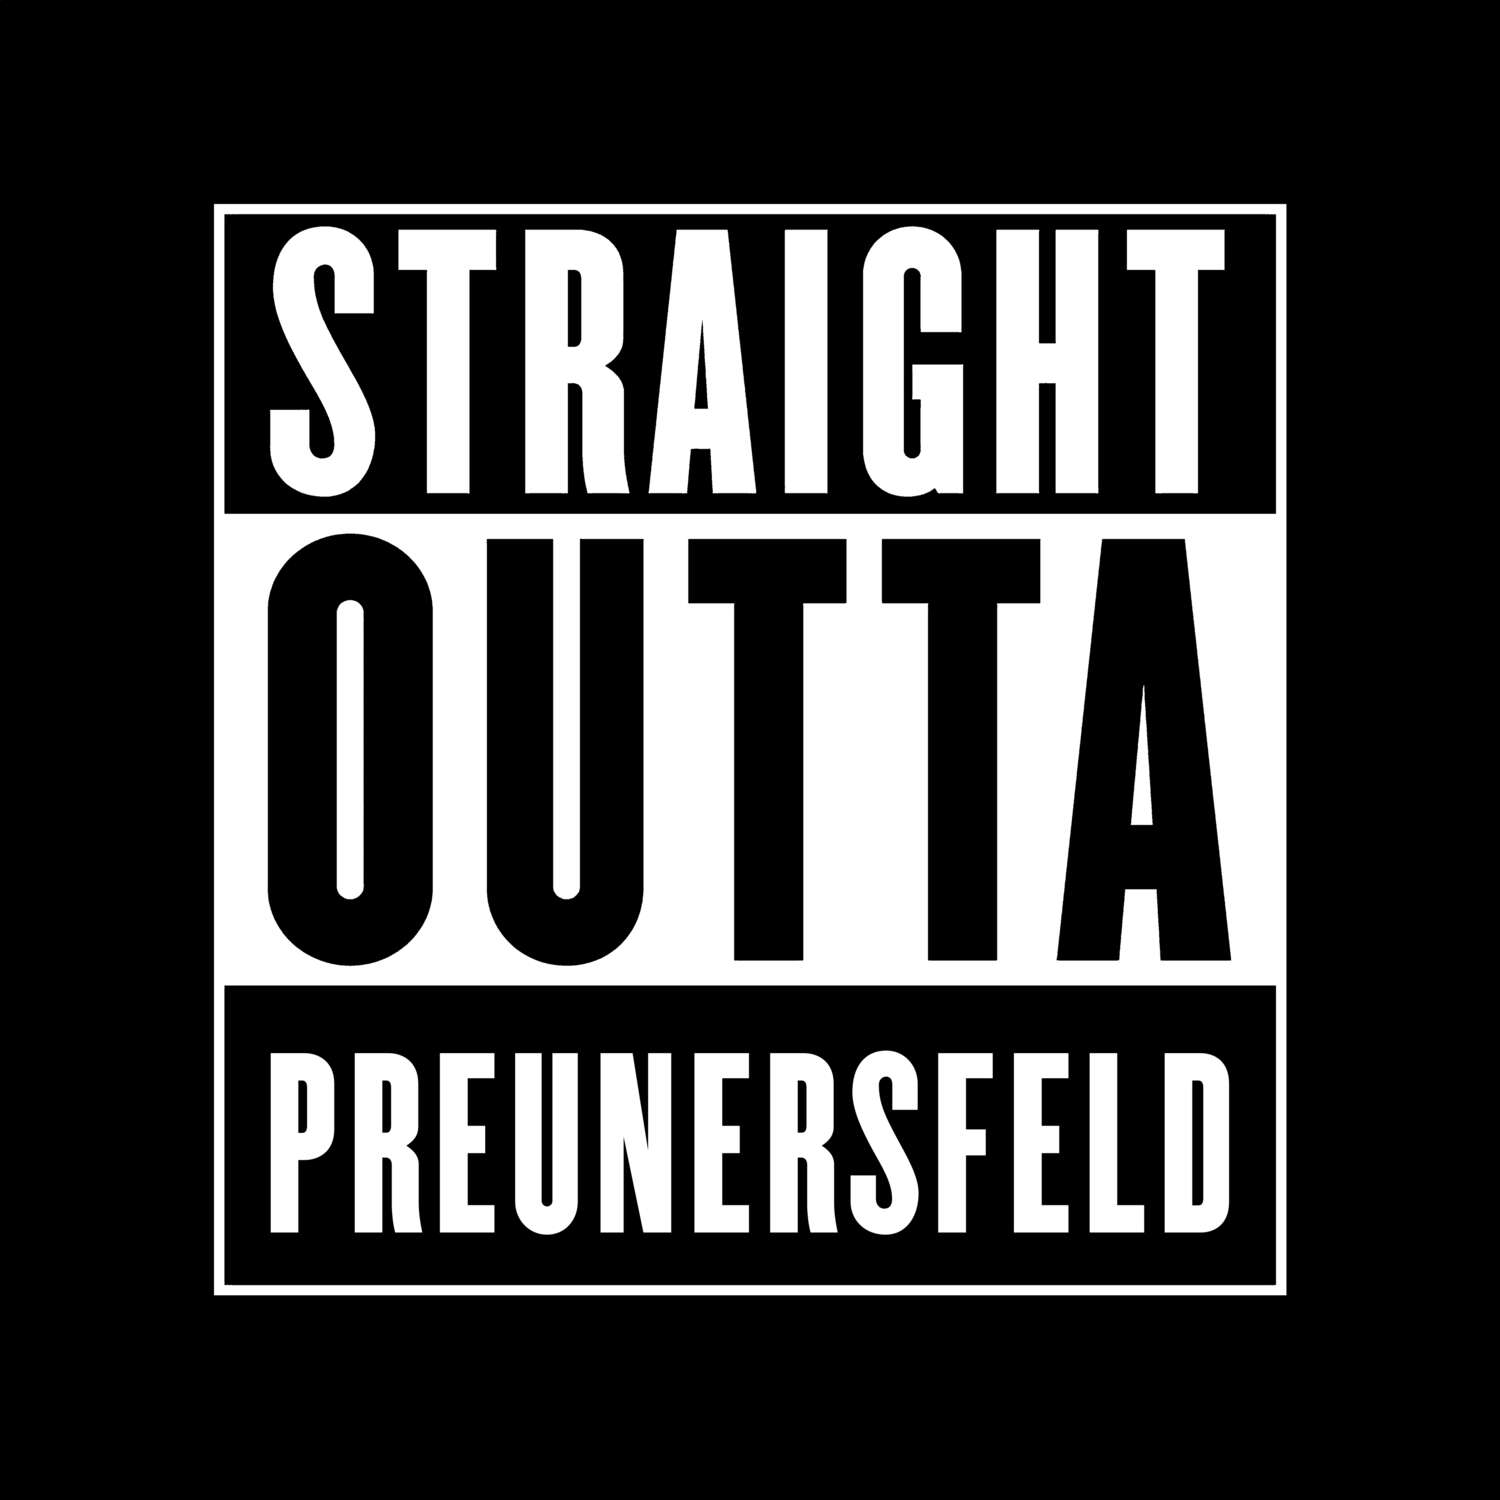 Preunersfeld T-Shirt »Straight Outta«